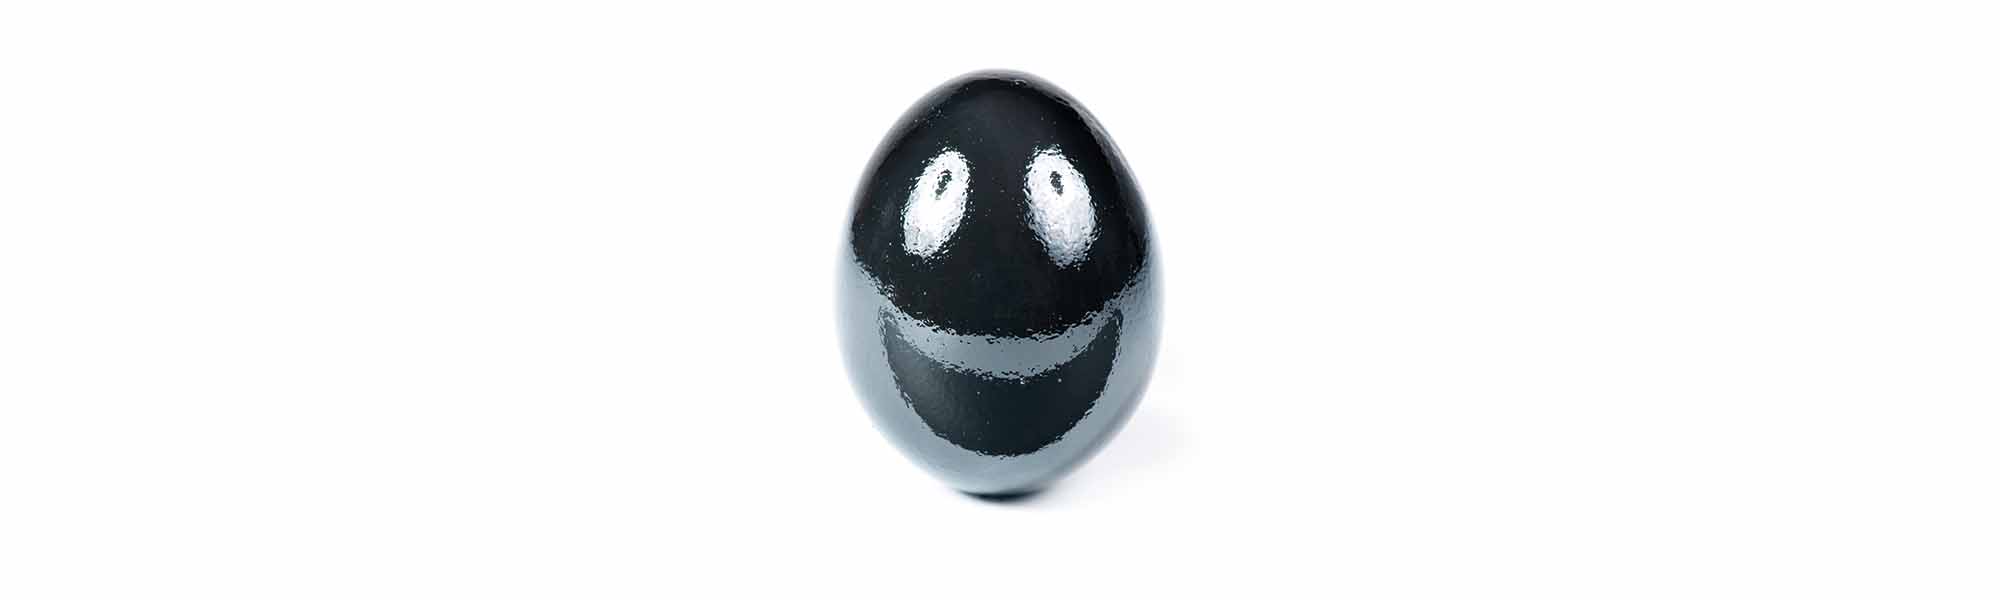 Ein Ei ist ein Ei ist ein Ei.